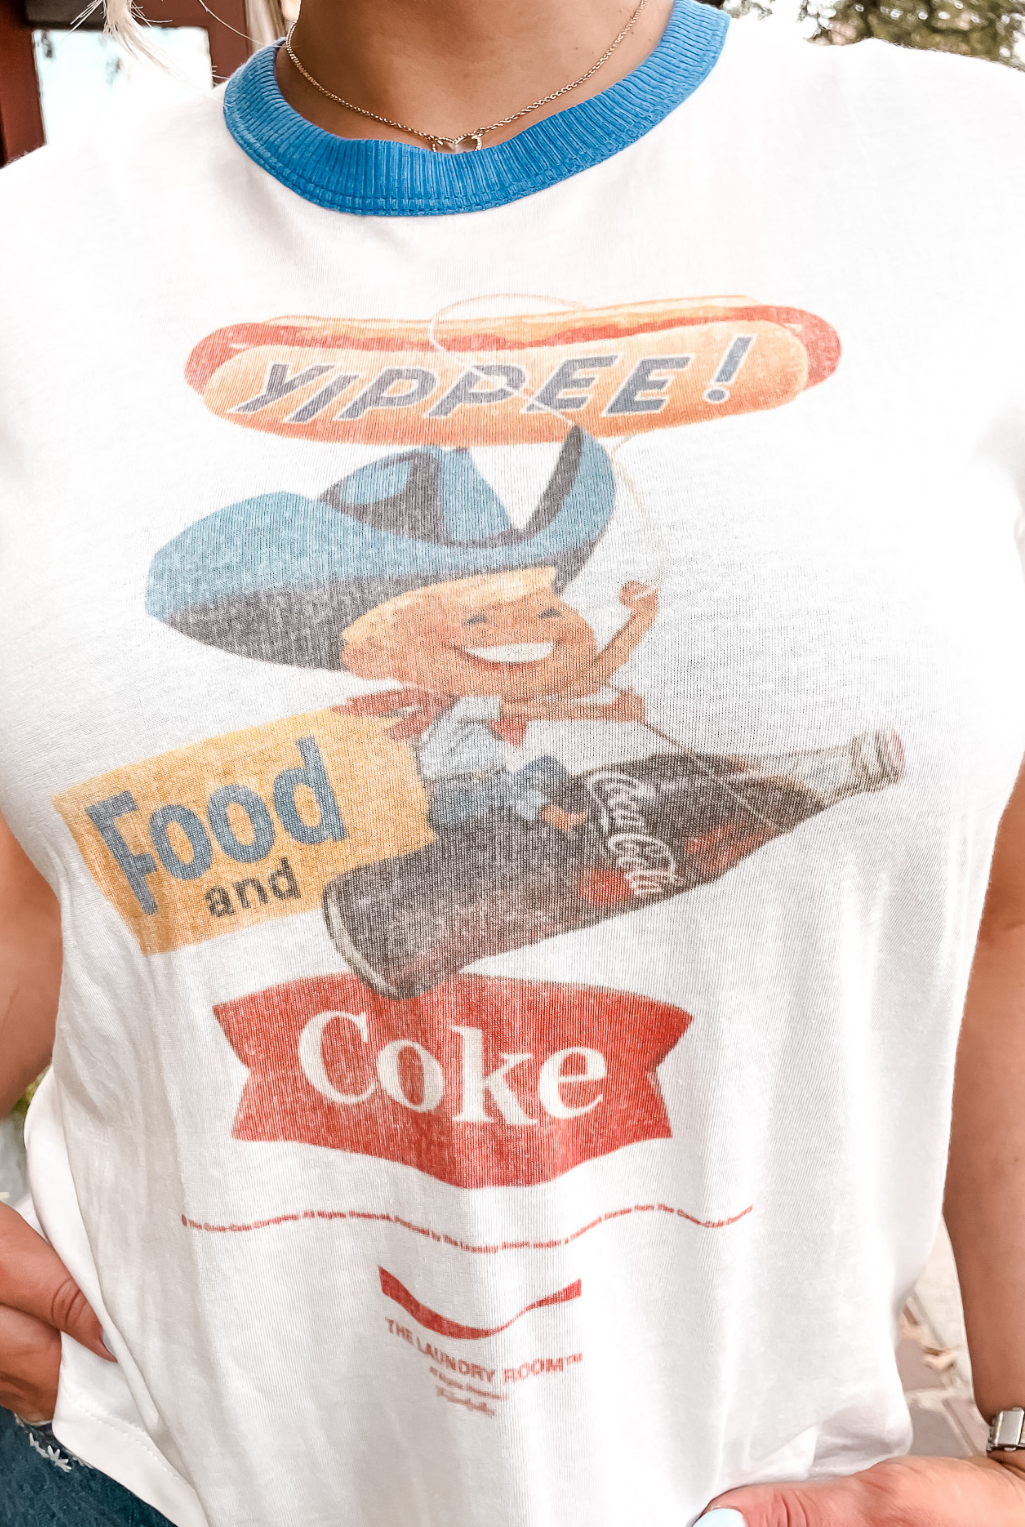 Yippee Coke T-Shirt